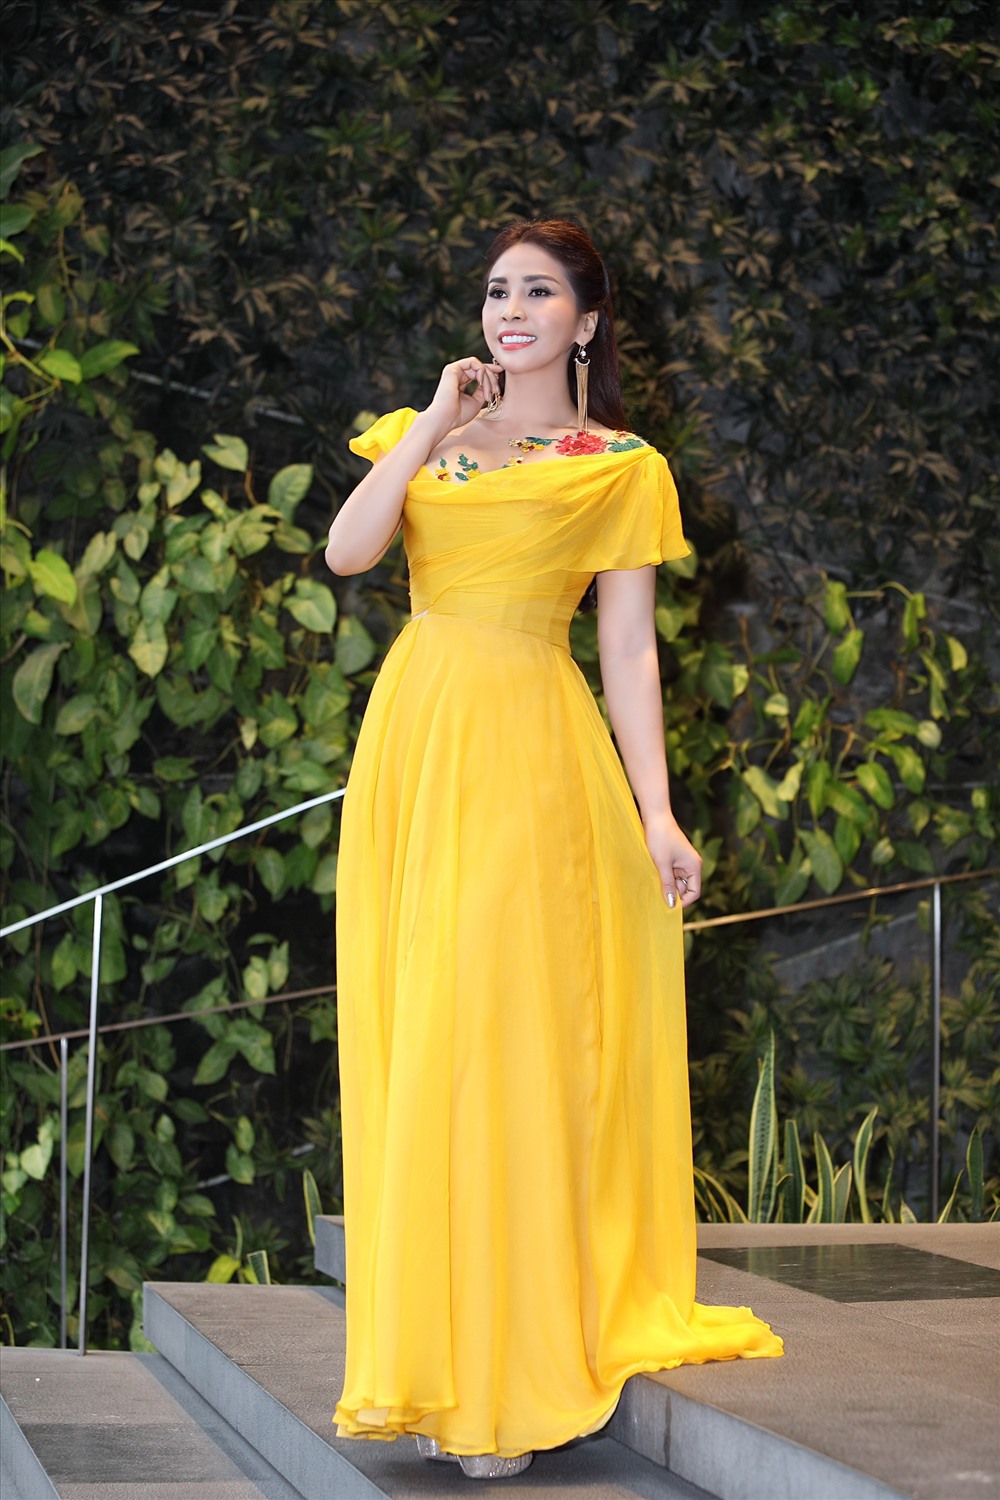 Trong thiết kế lộng lấy với tông màu vàng nổi bật, nữ diễn viên Lý Hương thu hút bởi nét đẹp bất chấp thời gian. Ảnh: NVCC.